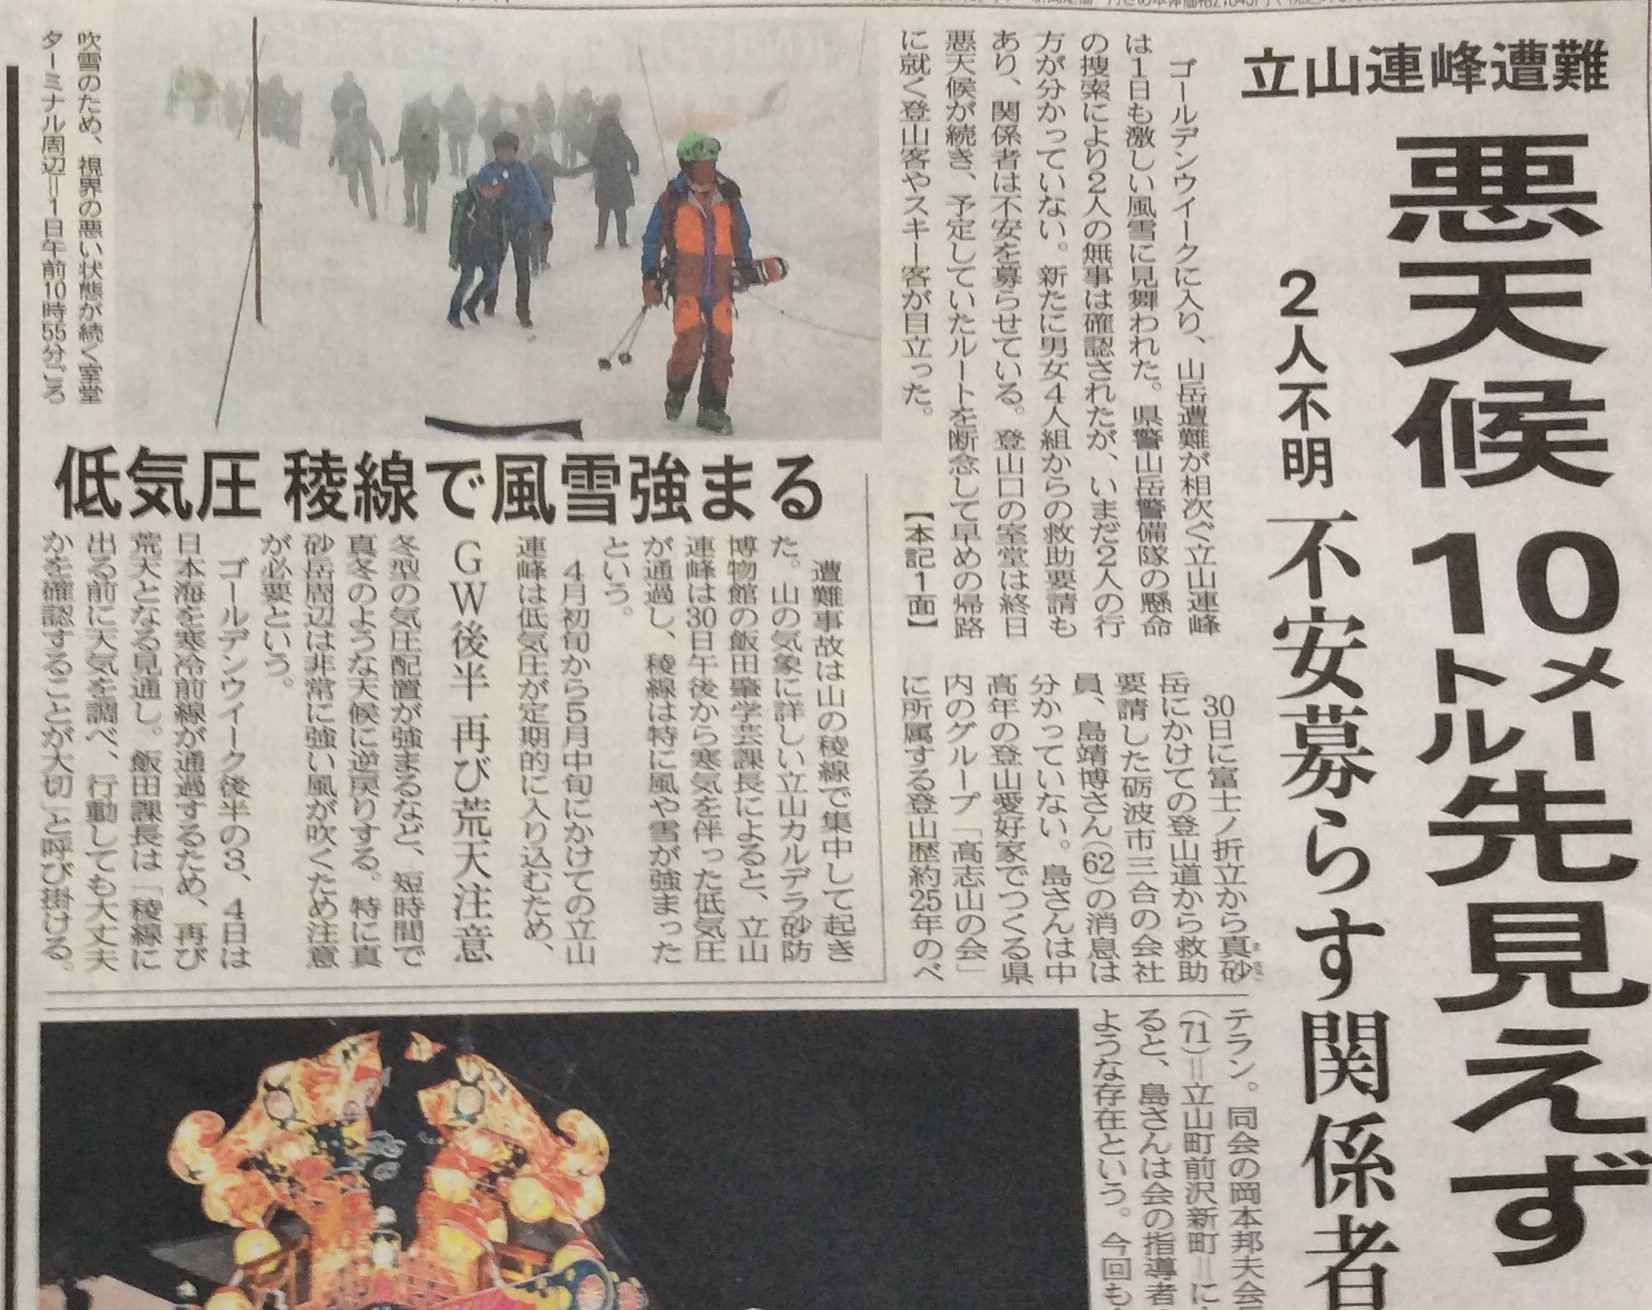 富山県警山岳警備隊と遭難事故 またか 富山ってどこ テレビでもググっても出てこない きときと な現地情報 Toyadoco とやどこ